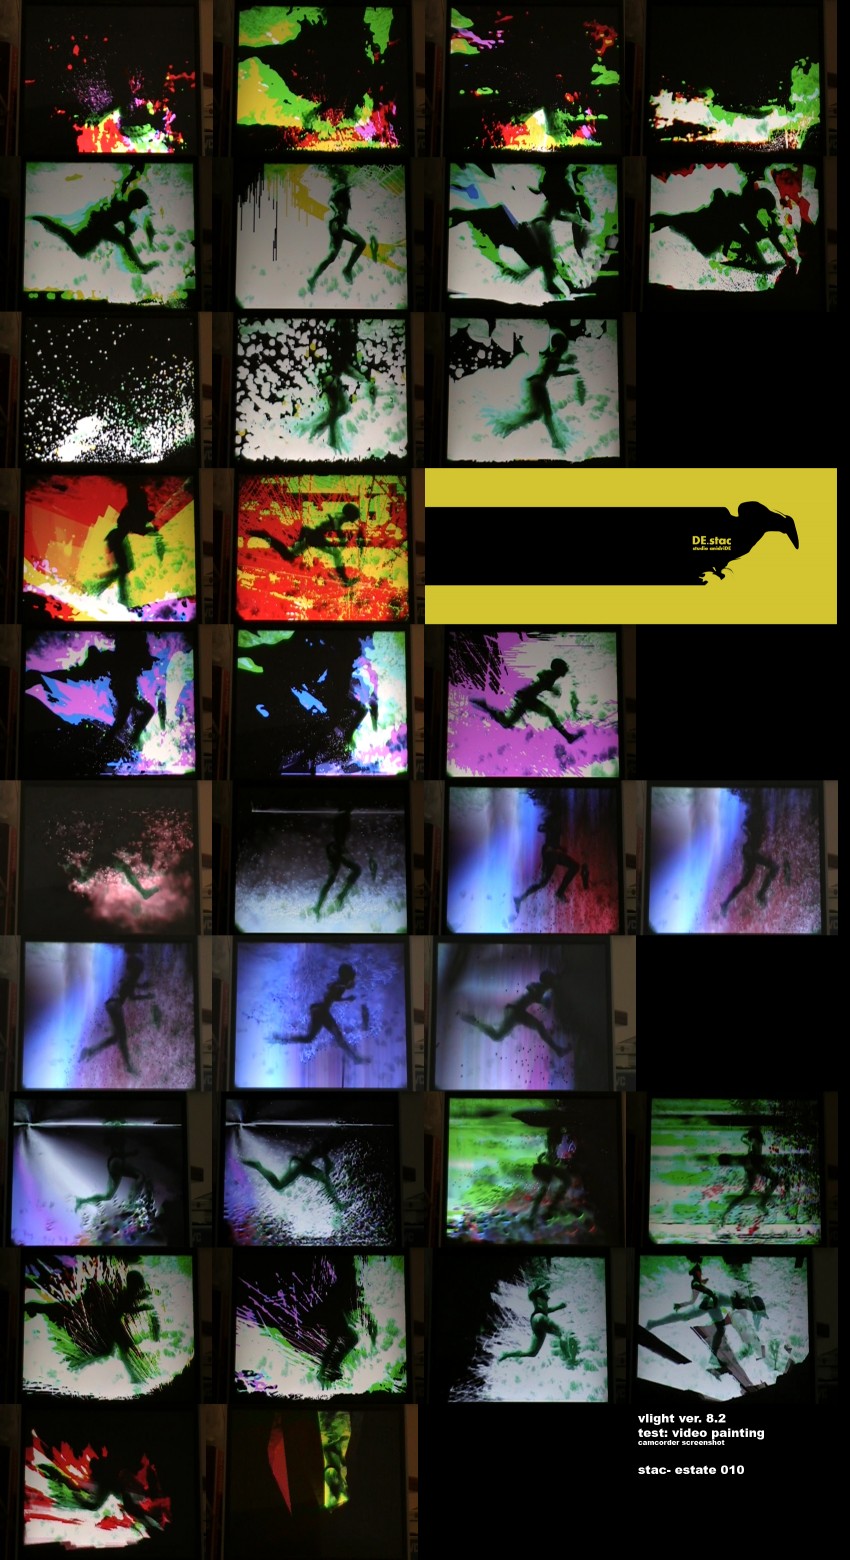 destac- many screenshot of the same work. swimmer loop by vjkar